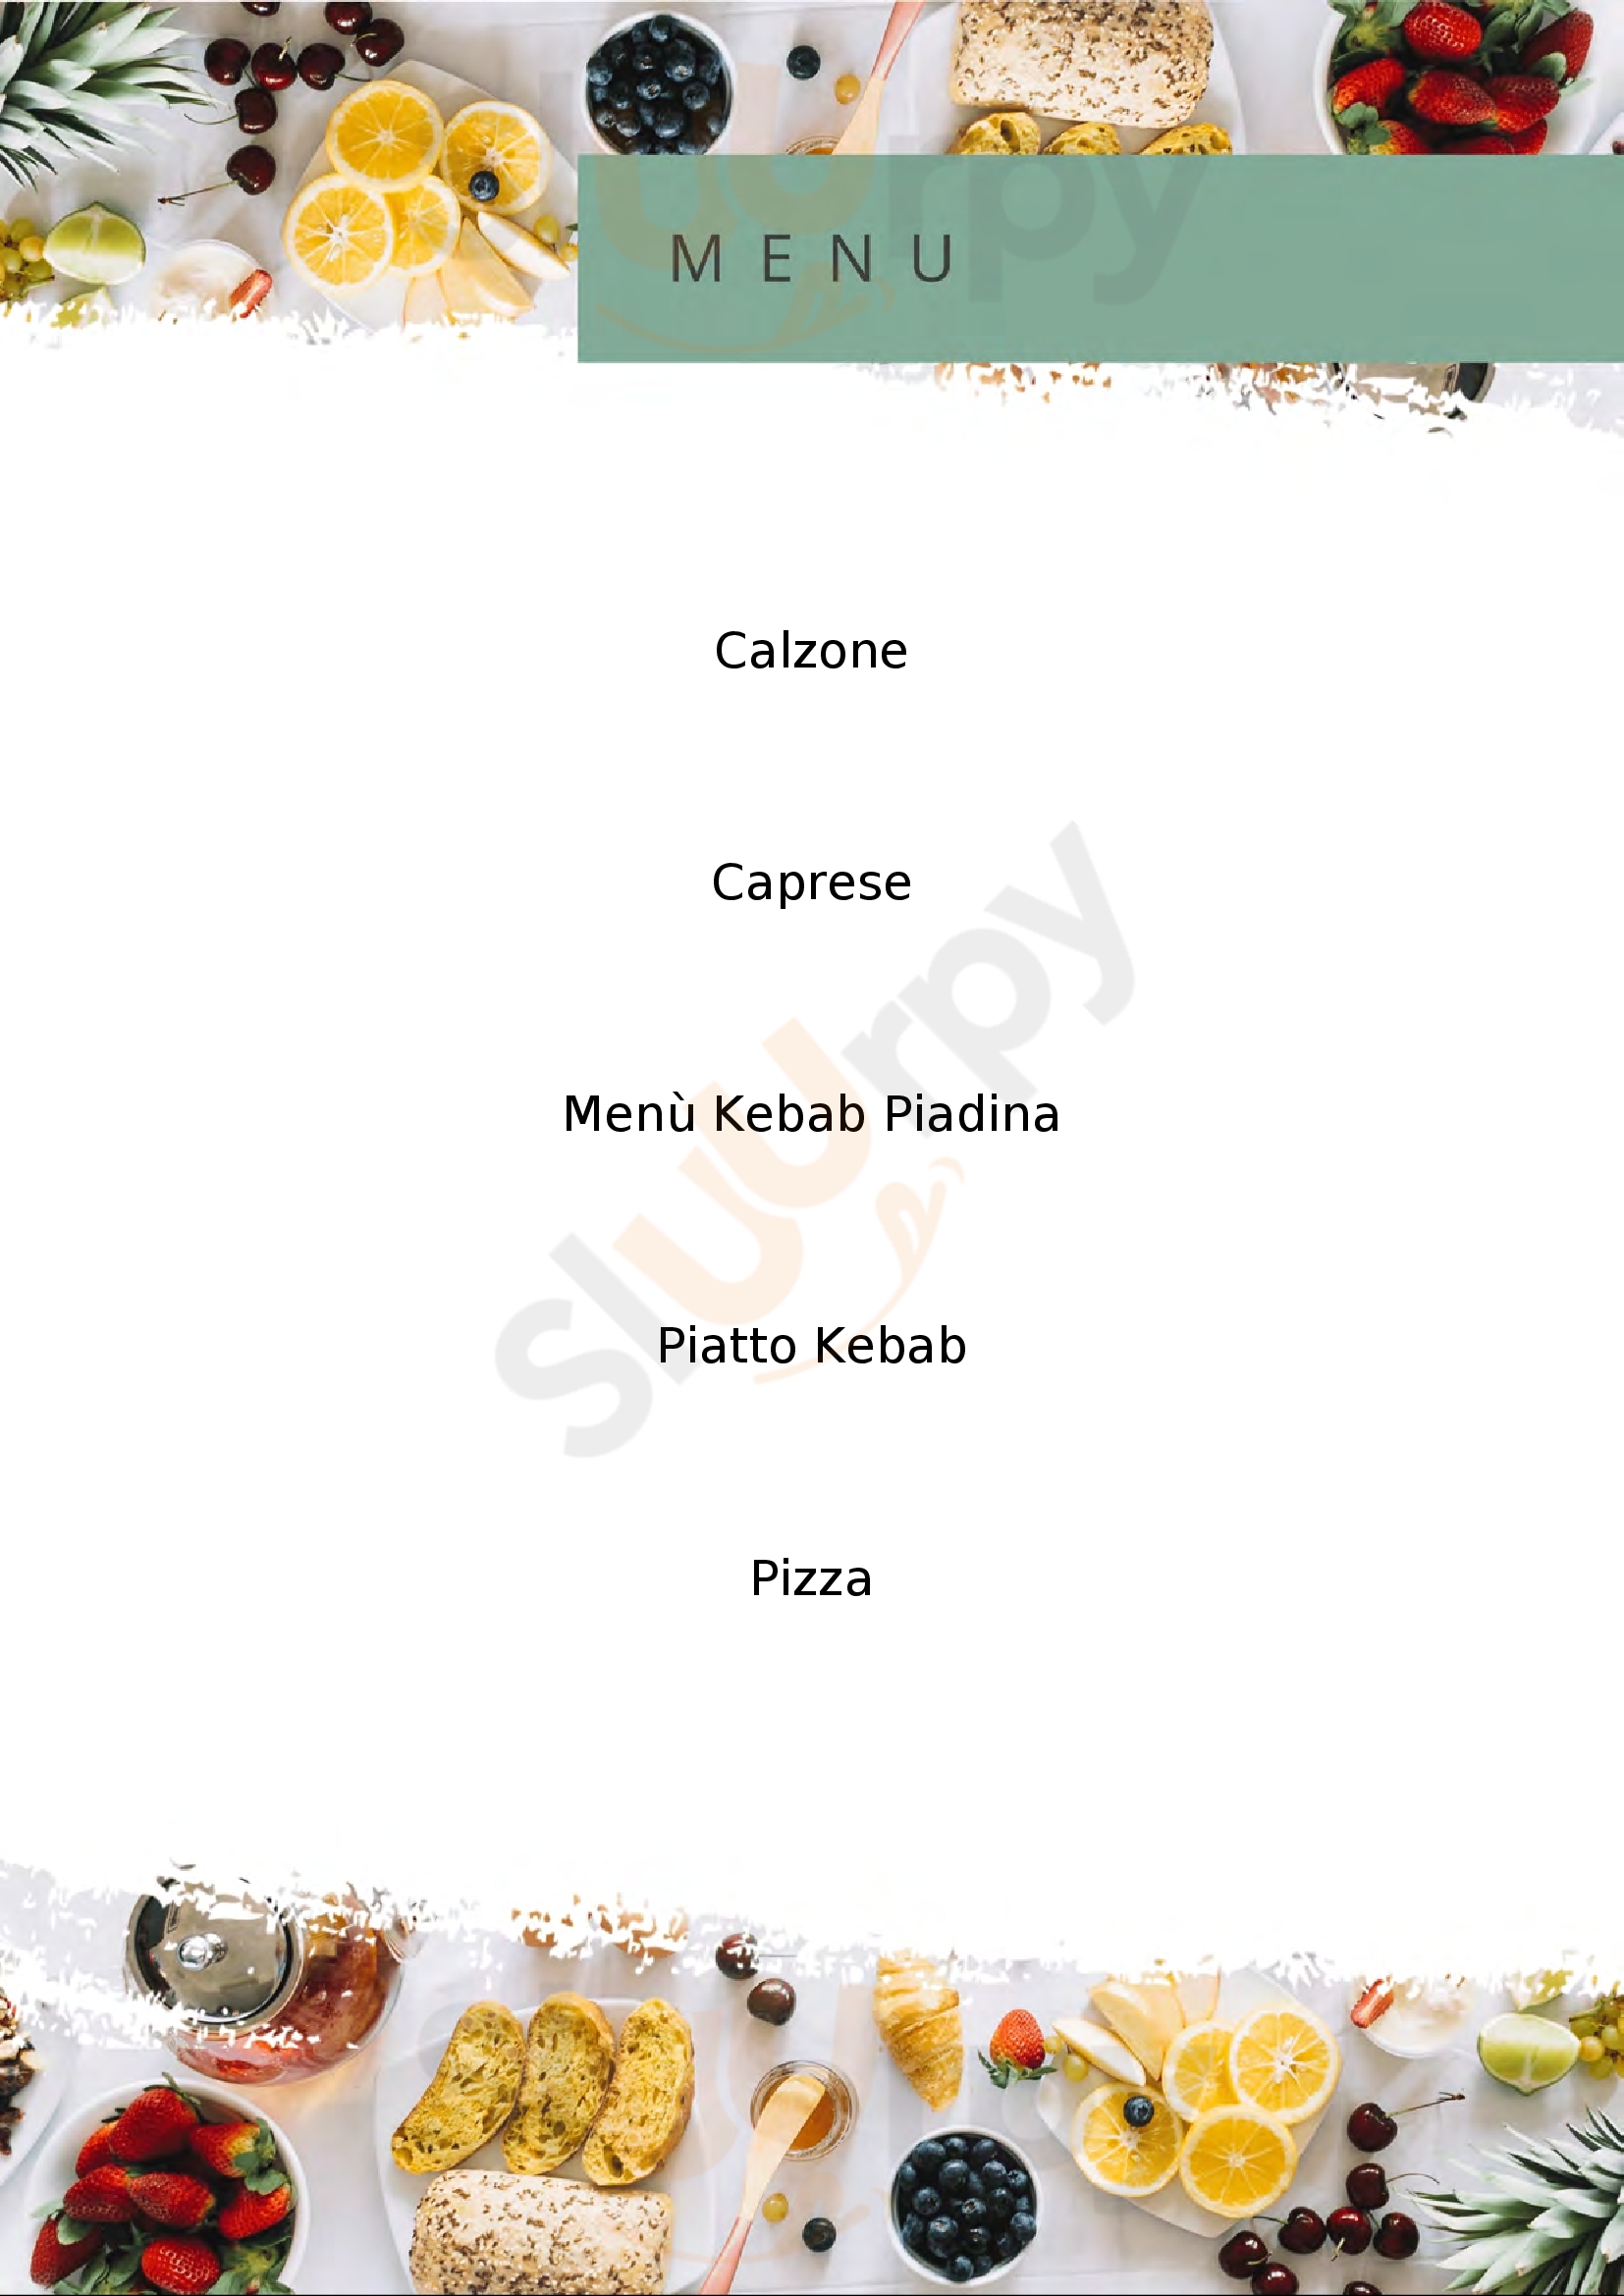 Pizzeria Mar Rosso Nembro menù 1 pagina